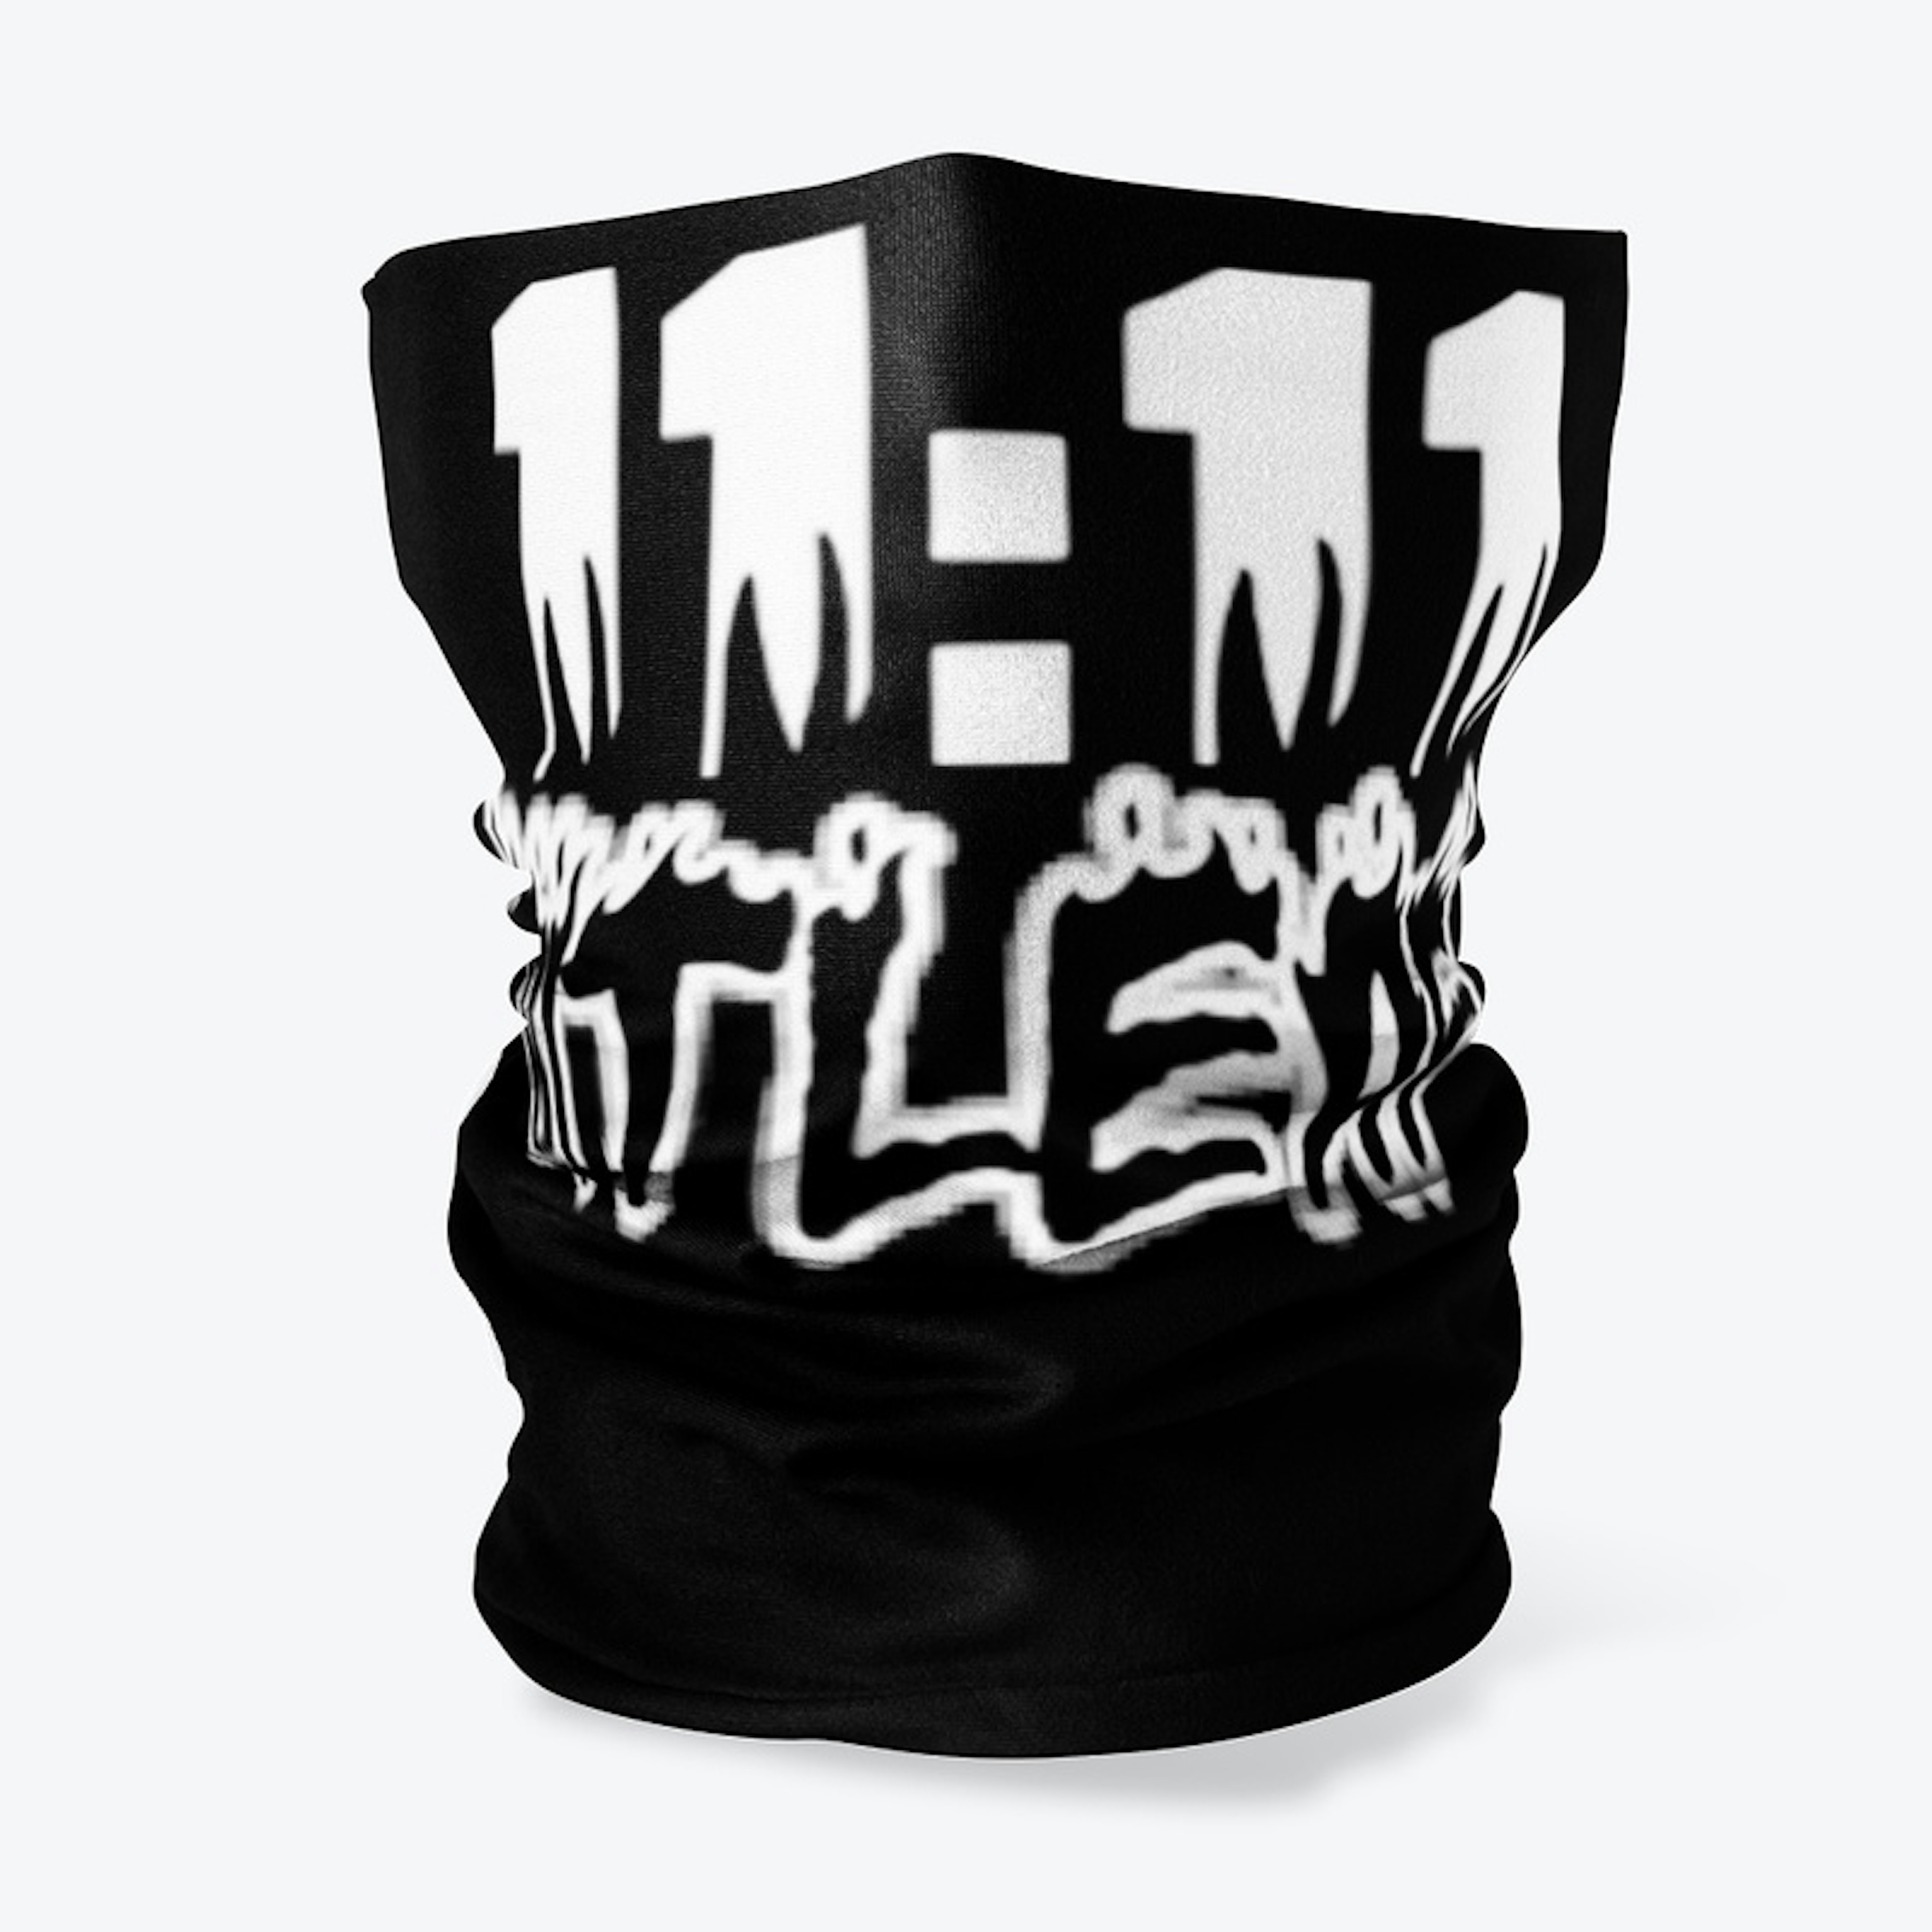 11:11 BitLeaf Face Mask 